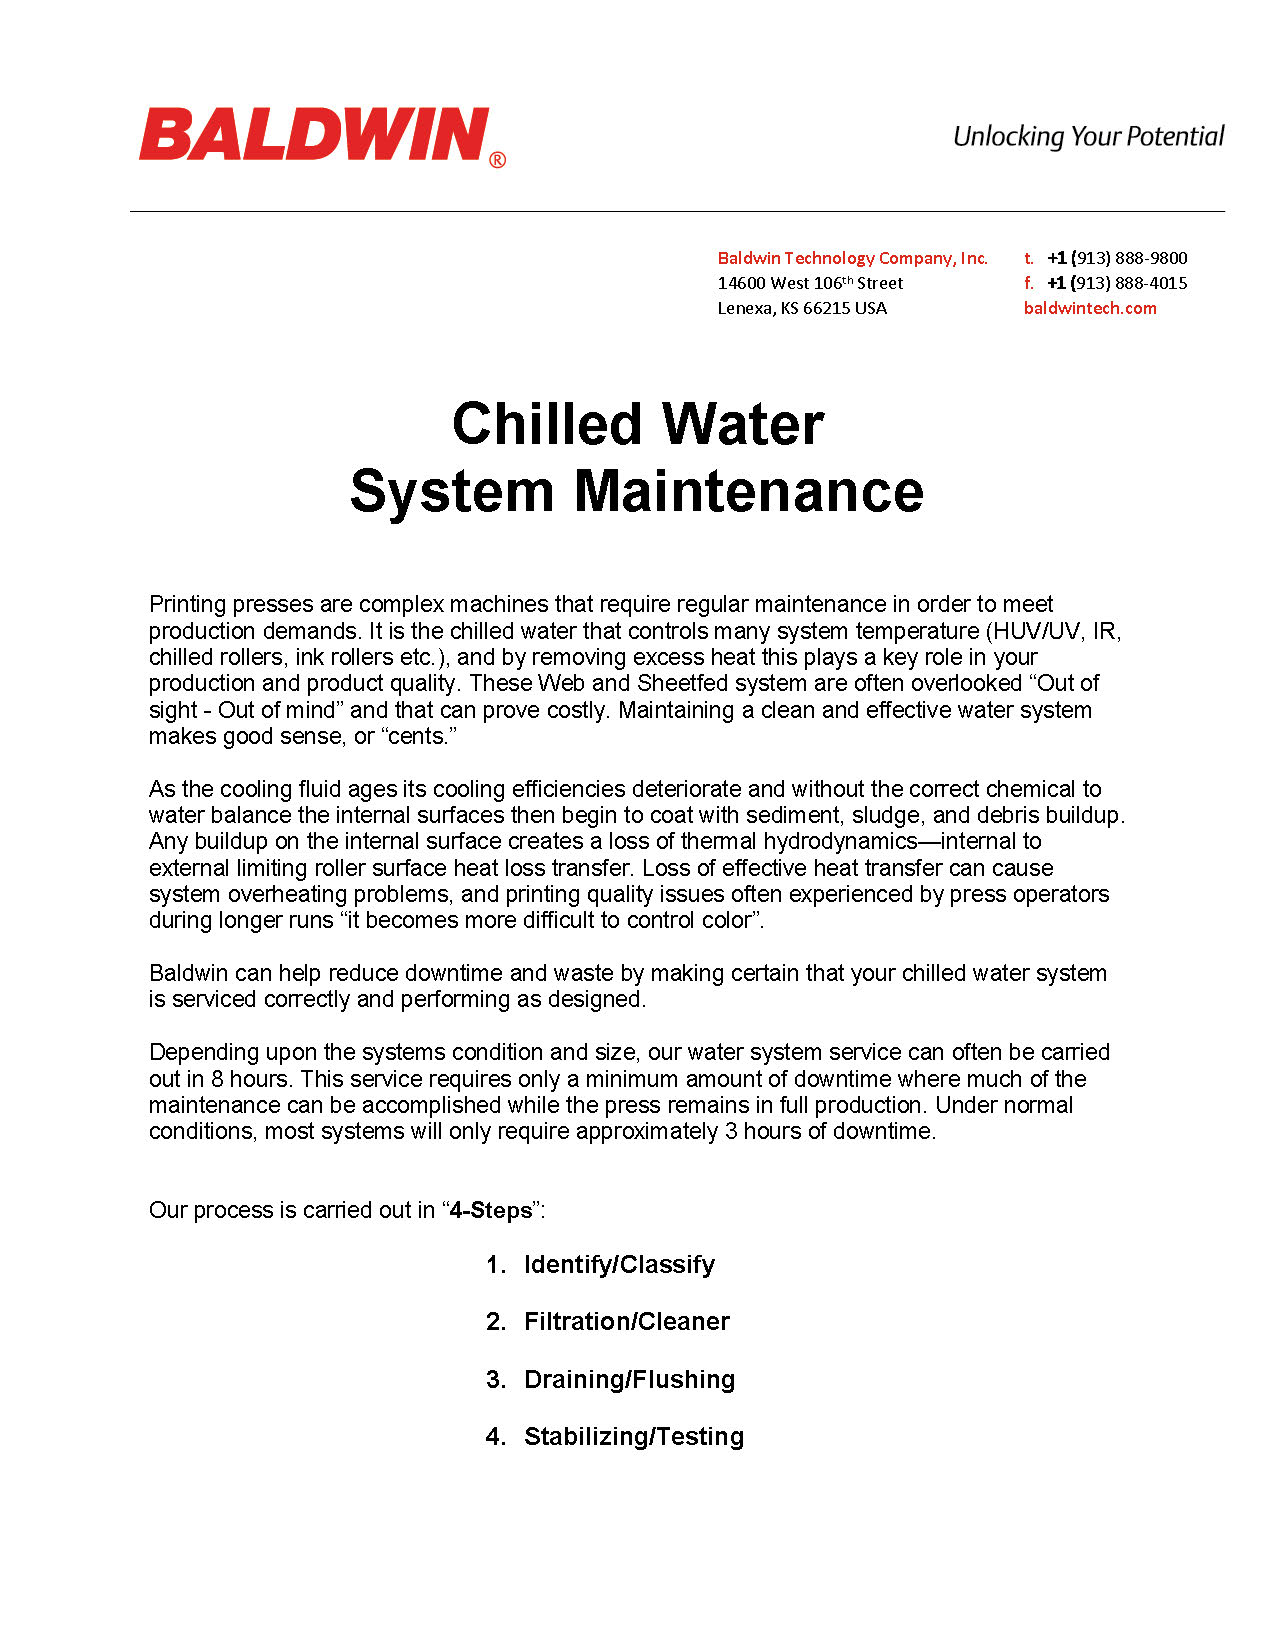 Mantenimiento del sistema de agua fría PDF_Page_1.jpg